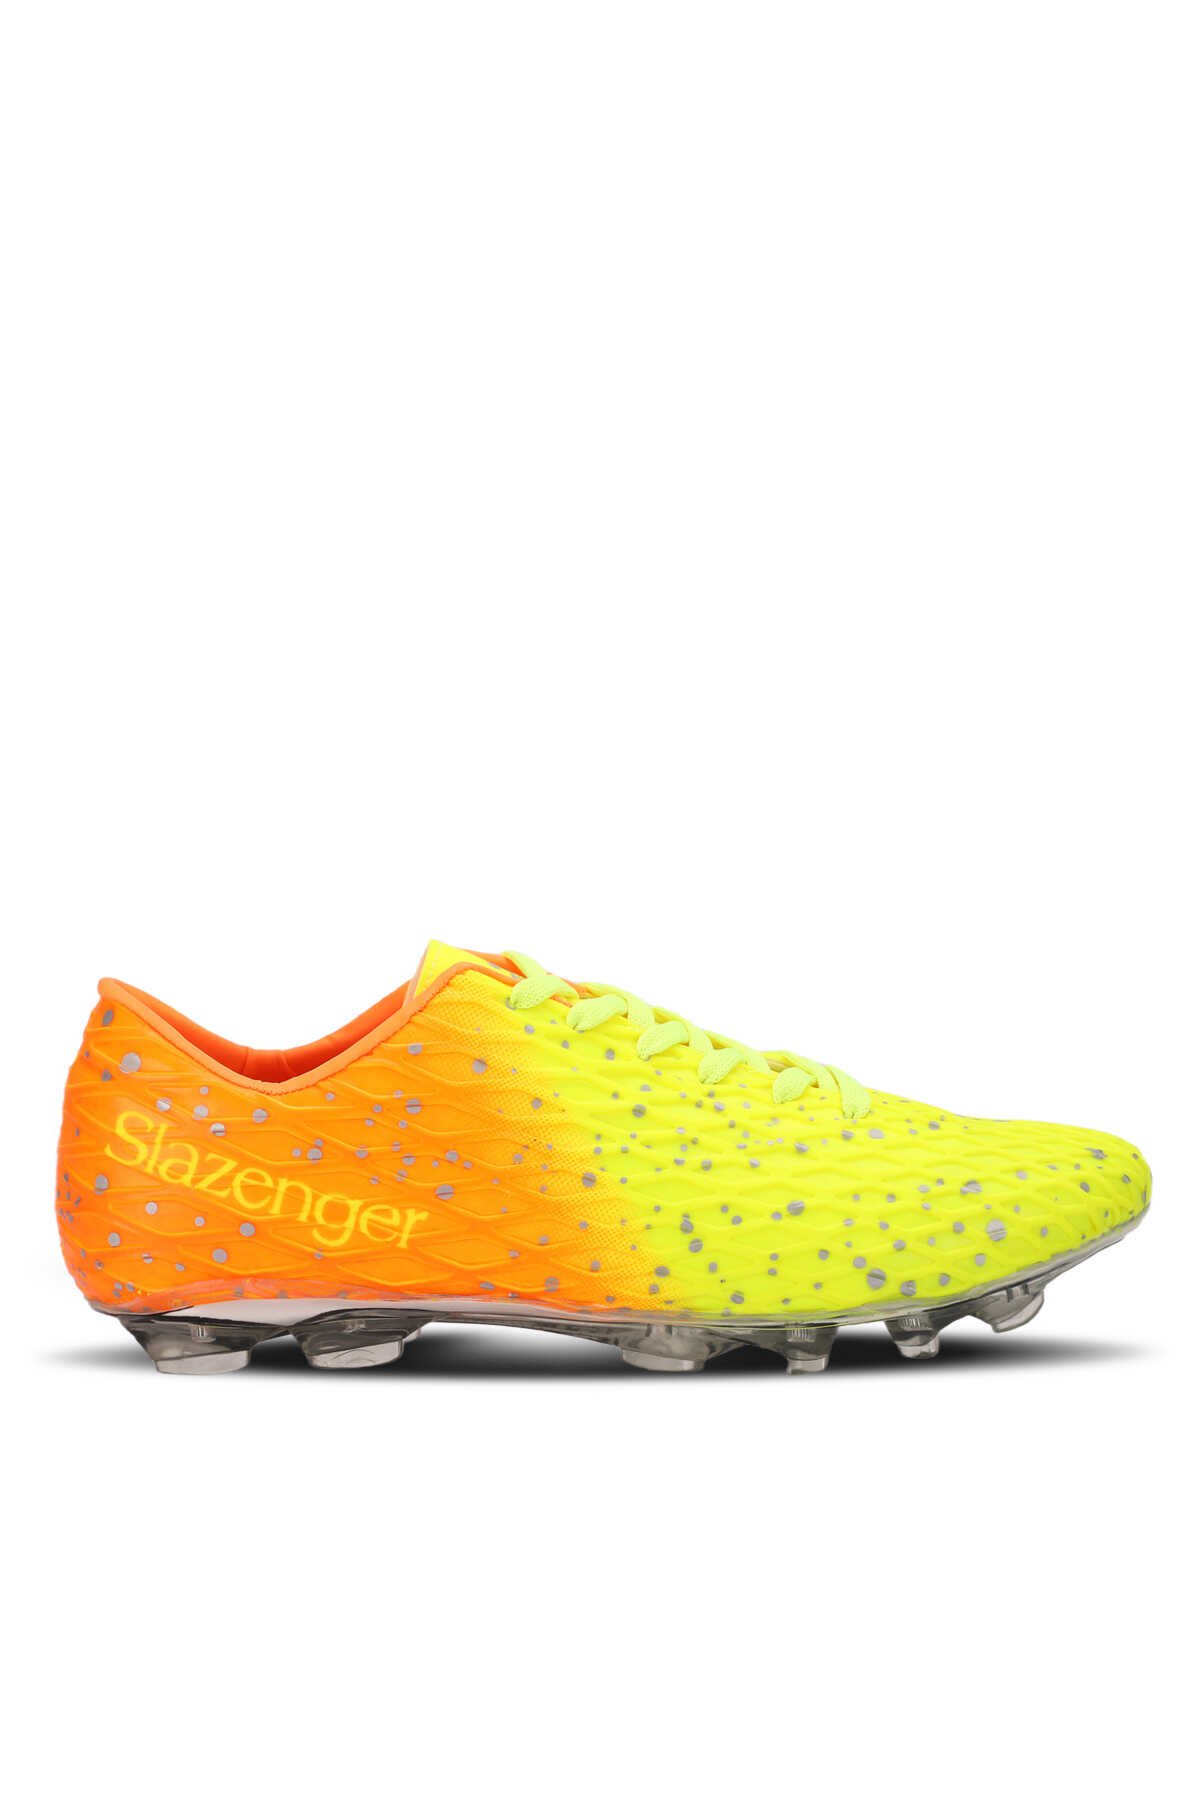 Slazenger - Slazenger HANIA KRP Futbol Erkek Krampon Ayakkabı Neon Sarı